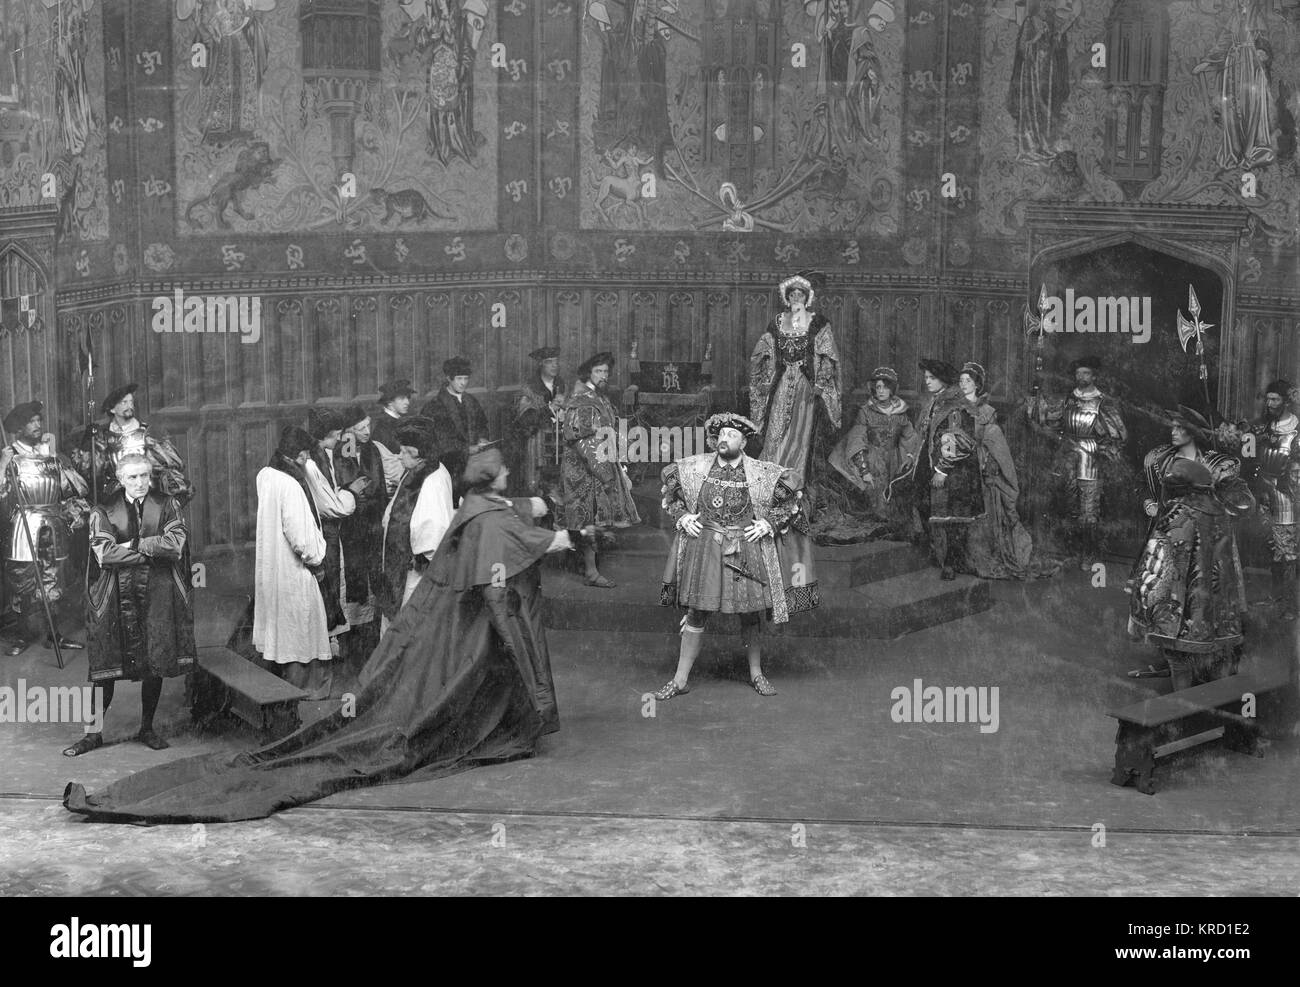 Una scena da Shakespeare, Henry VIII, in una produzione di Herbert Beerbohm Tree a Sua Maestà's Theatre, Londra. La produzione ha aperto nel 1910, è stato rilanciato per il London Shakespeare Festival in 1911 ed è stato ripetuto nuovamente nel 1912. Tree ha giocato il Cardinale Wolsey. Altri protagonisti sono stati Vanbrugh viola (Queen Katherine), Arthur Bourchier (Re Henry) e Laura Carmagnola (Anne Bullen). Questa scena mostra un confronto tra Henry e Wolsey, mentre i membri della Corte a guardare, interessati. (3 di 6) Data: circa 1910-1912 Foto Stock